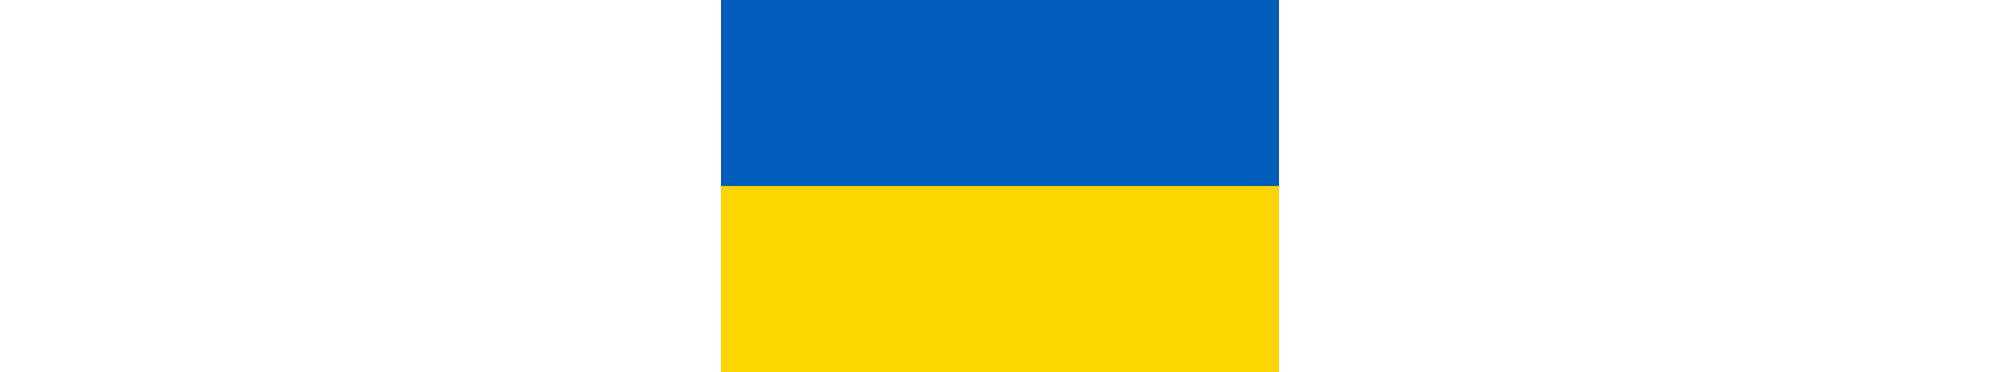 UkraineFlagge